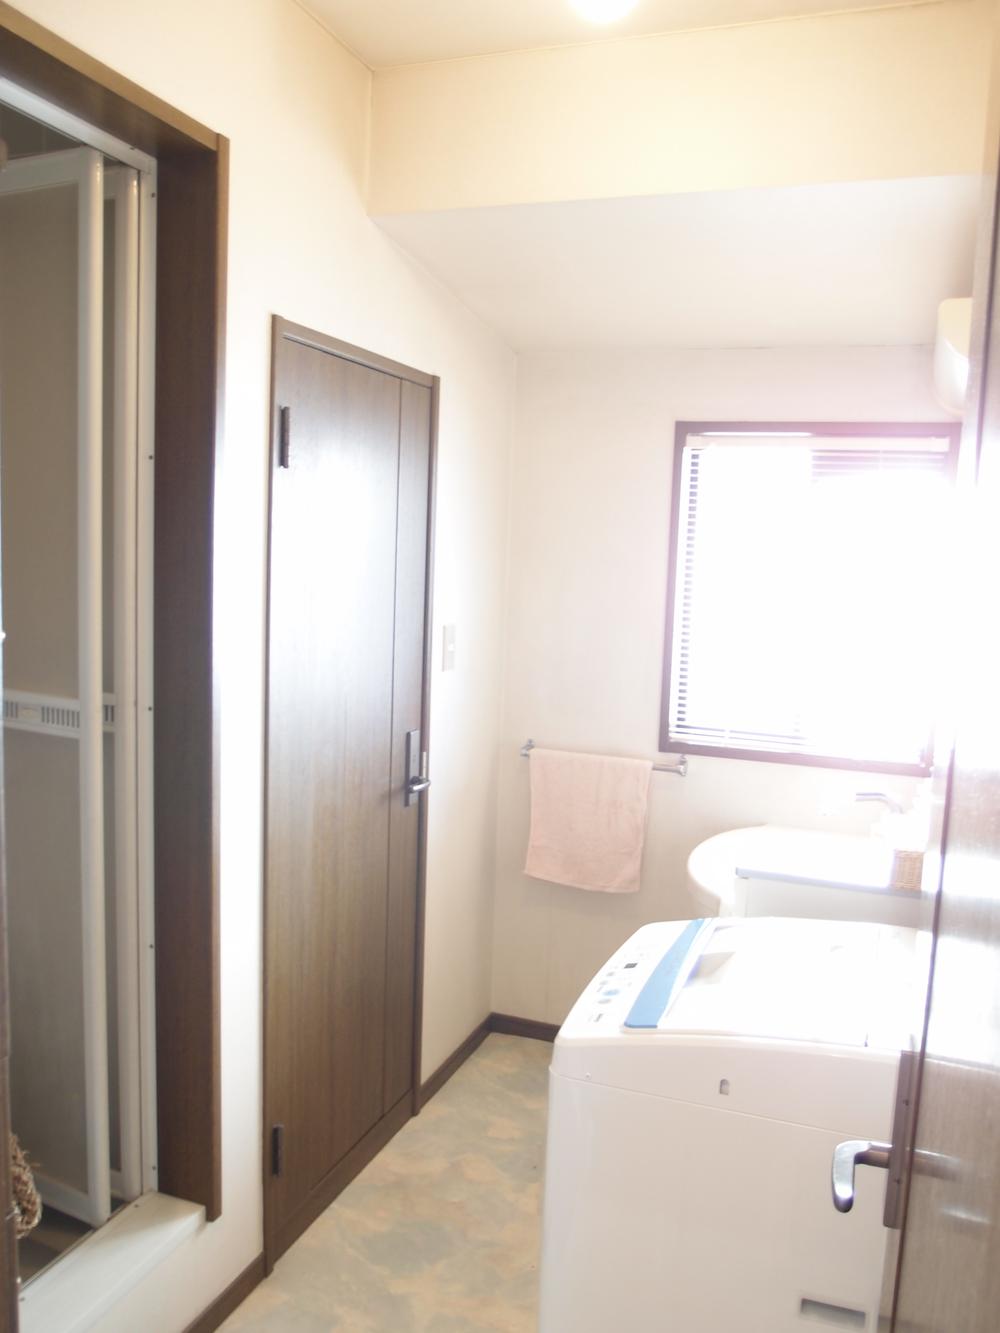 Wash basin, toilet. Second floor room (12 May 2013) Shooting